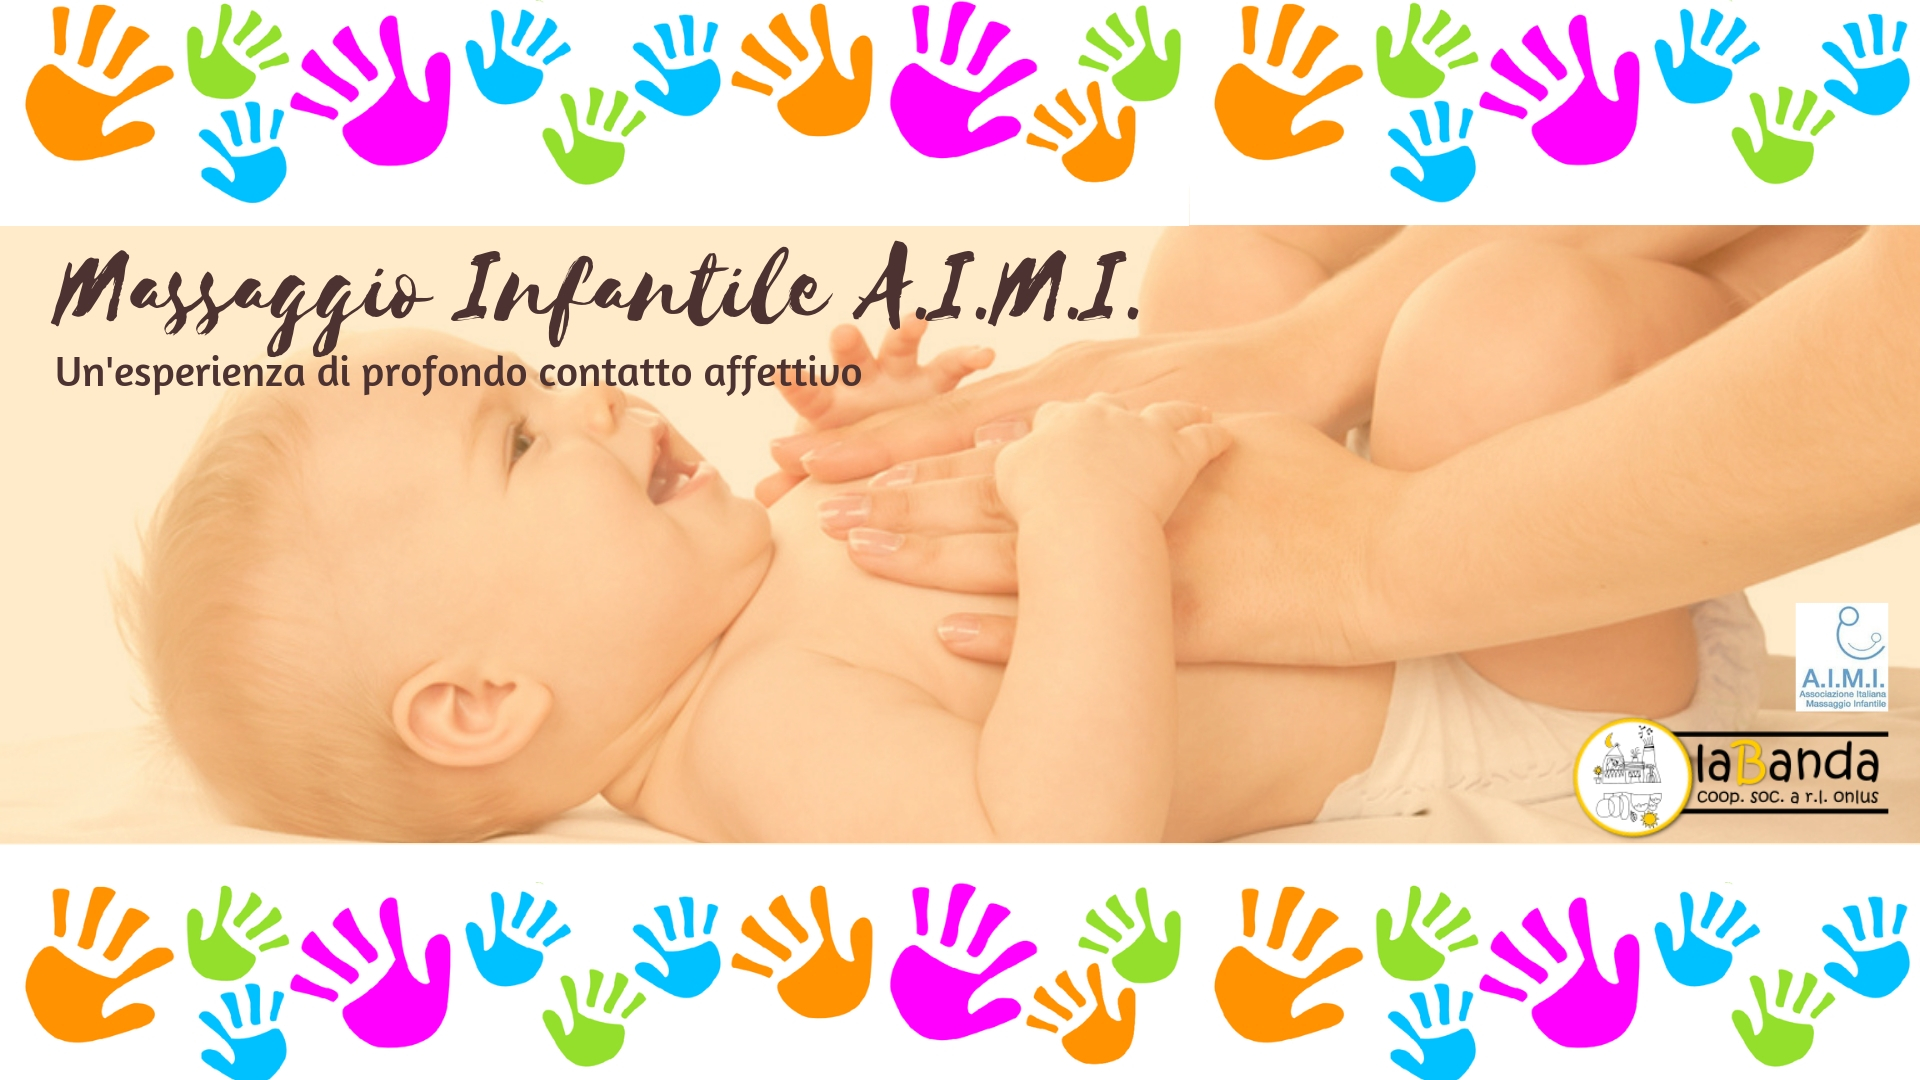 Da Venerdì 1 Marzo – Nuovo Corso “Massaggio Infantile A.I.M.I.” – laBanda coop